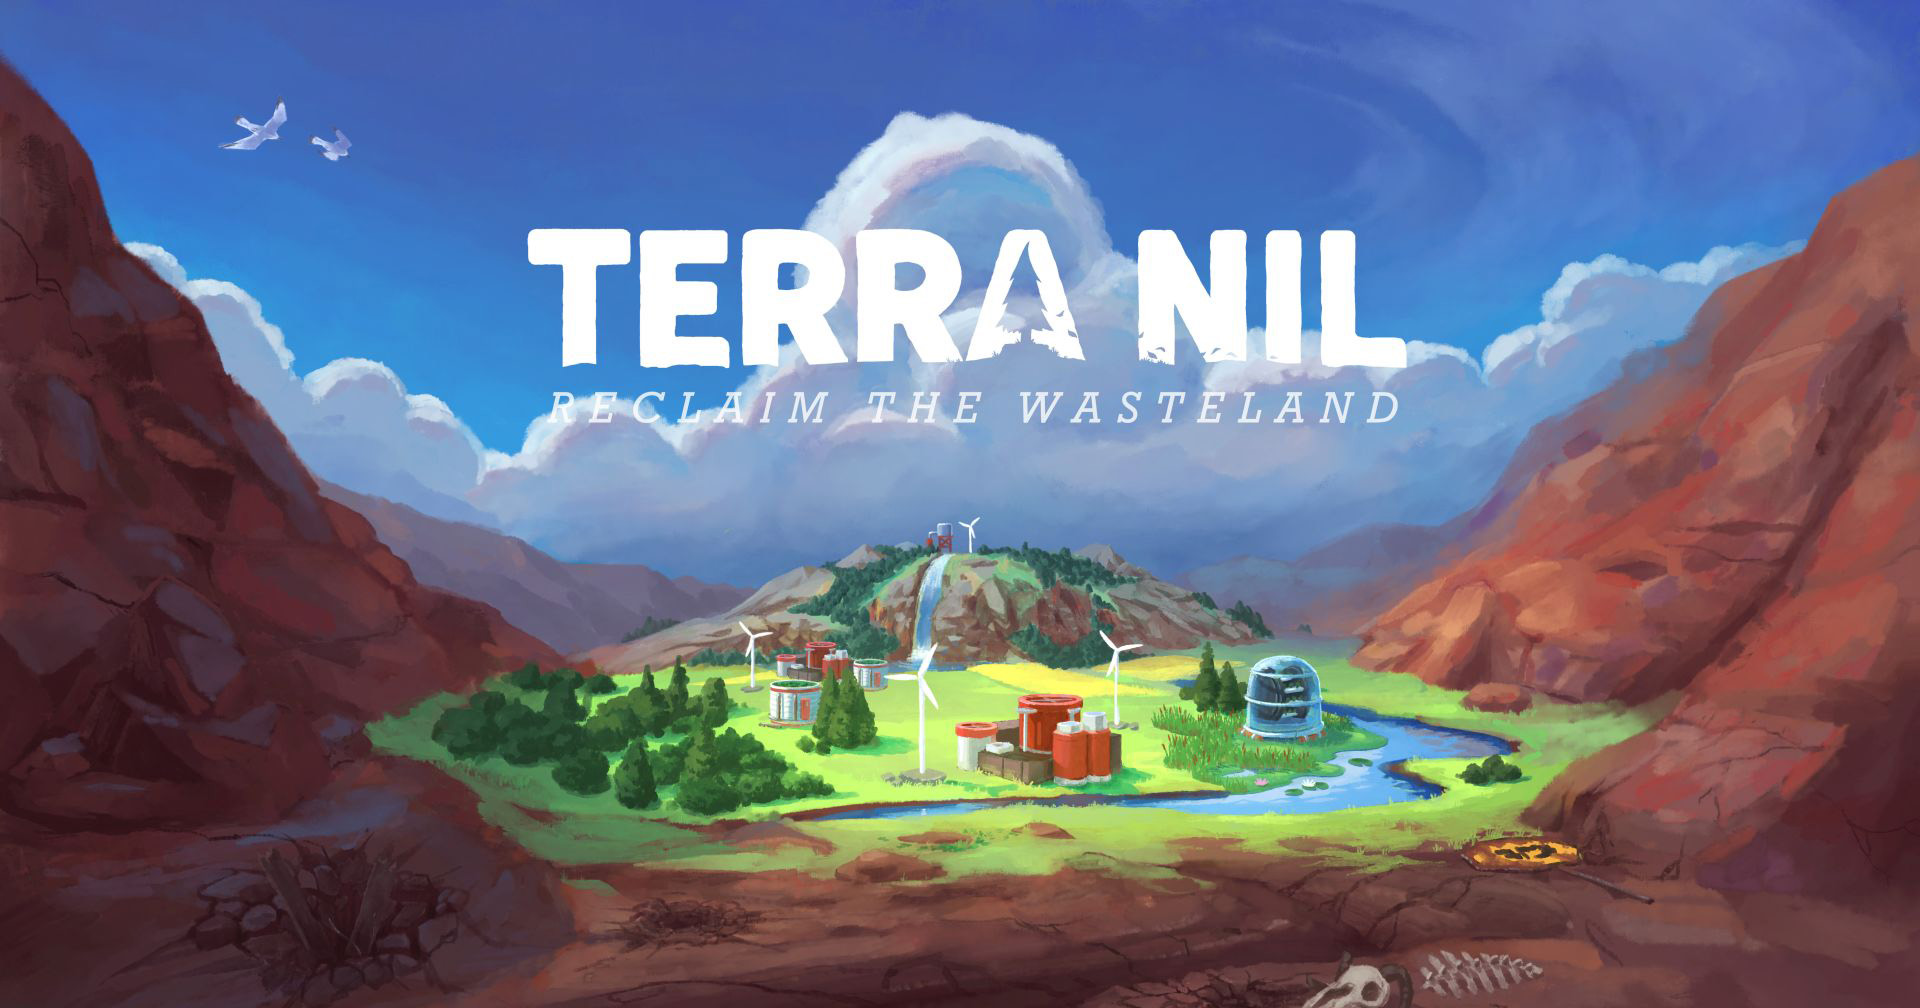 Terra Nil เกมสร้างเมือง สวมบทนักนิเวศวิทยา ฟื้นฟูพื้นที่แห้งแล้งให้อุดมสมบูรณ์ จาก Netflix